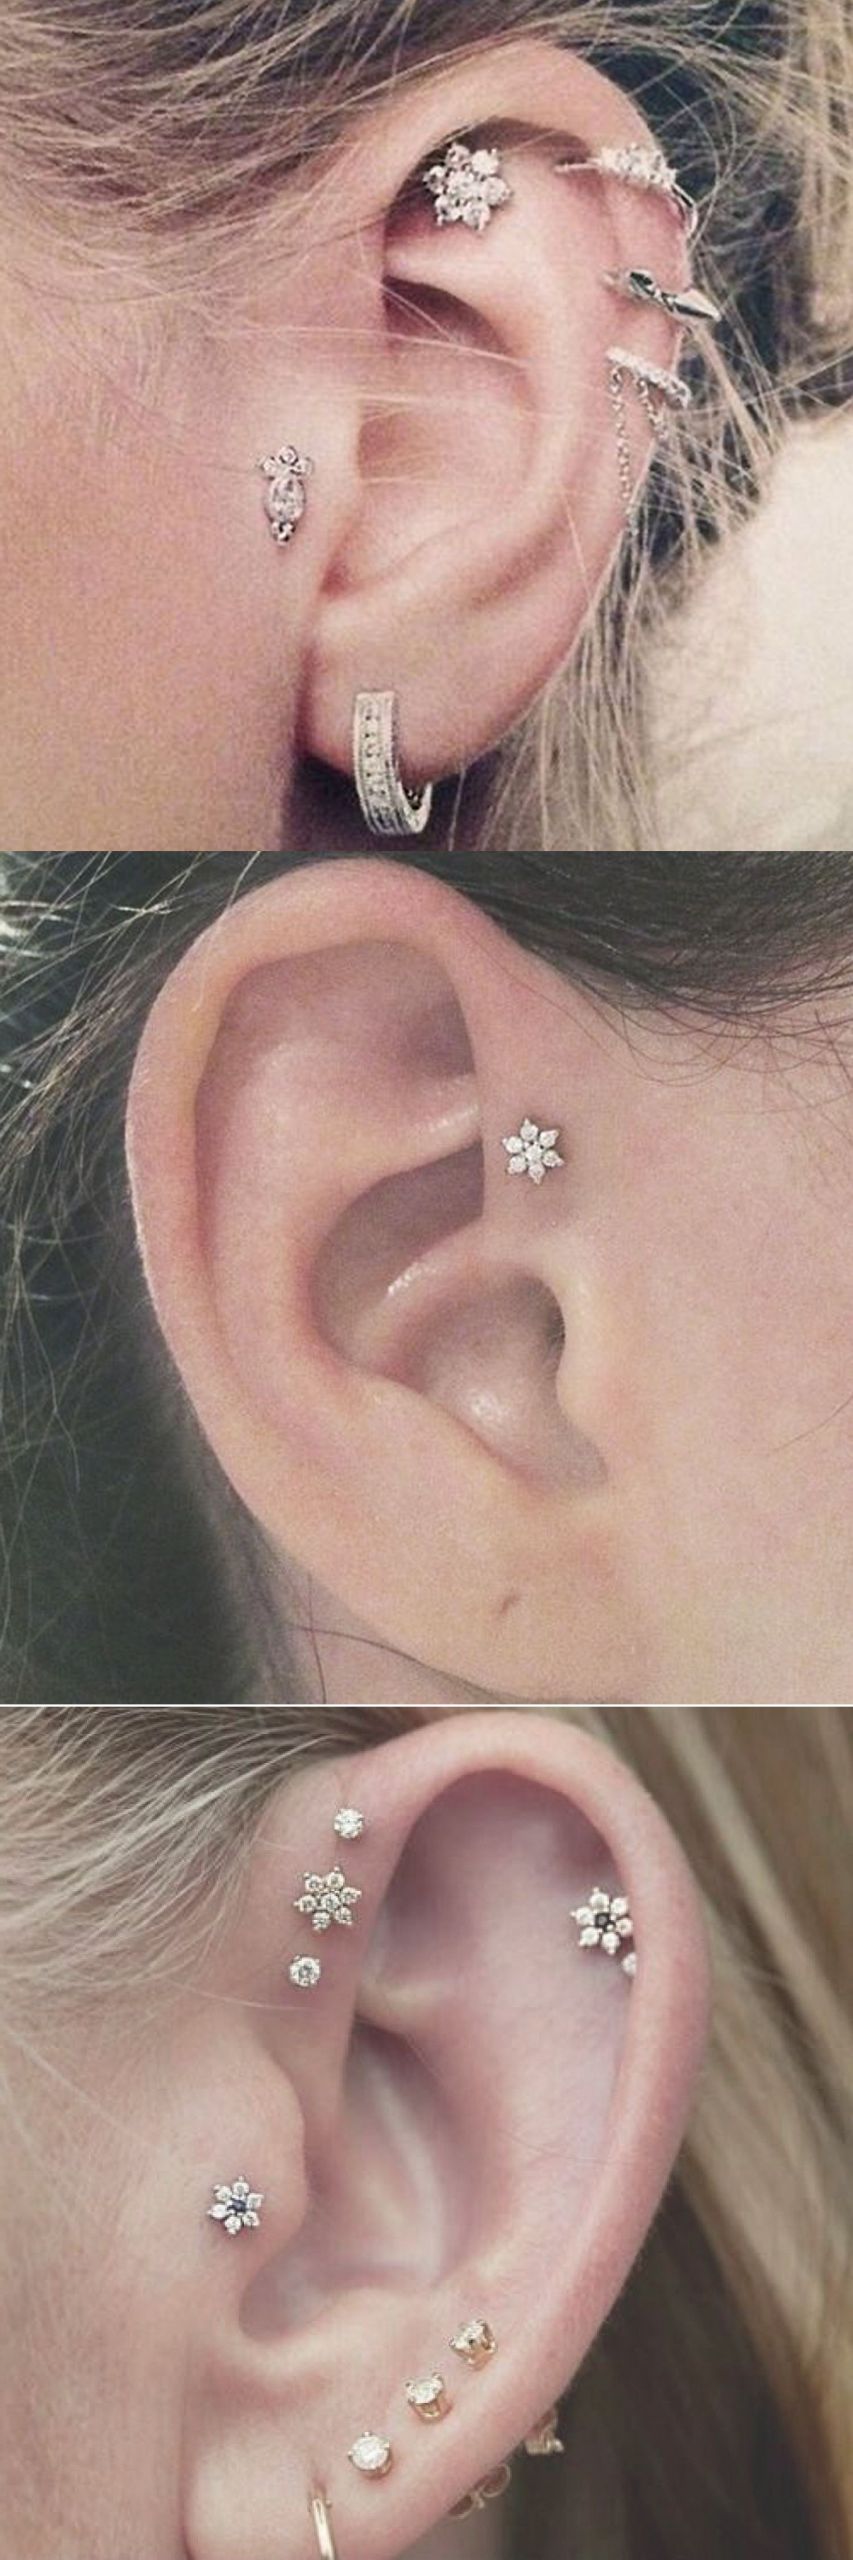 Triple Helix Earrings
 Cute Ear Piercing Ideas at MyBodiArt Cartilage